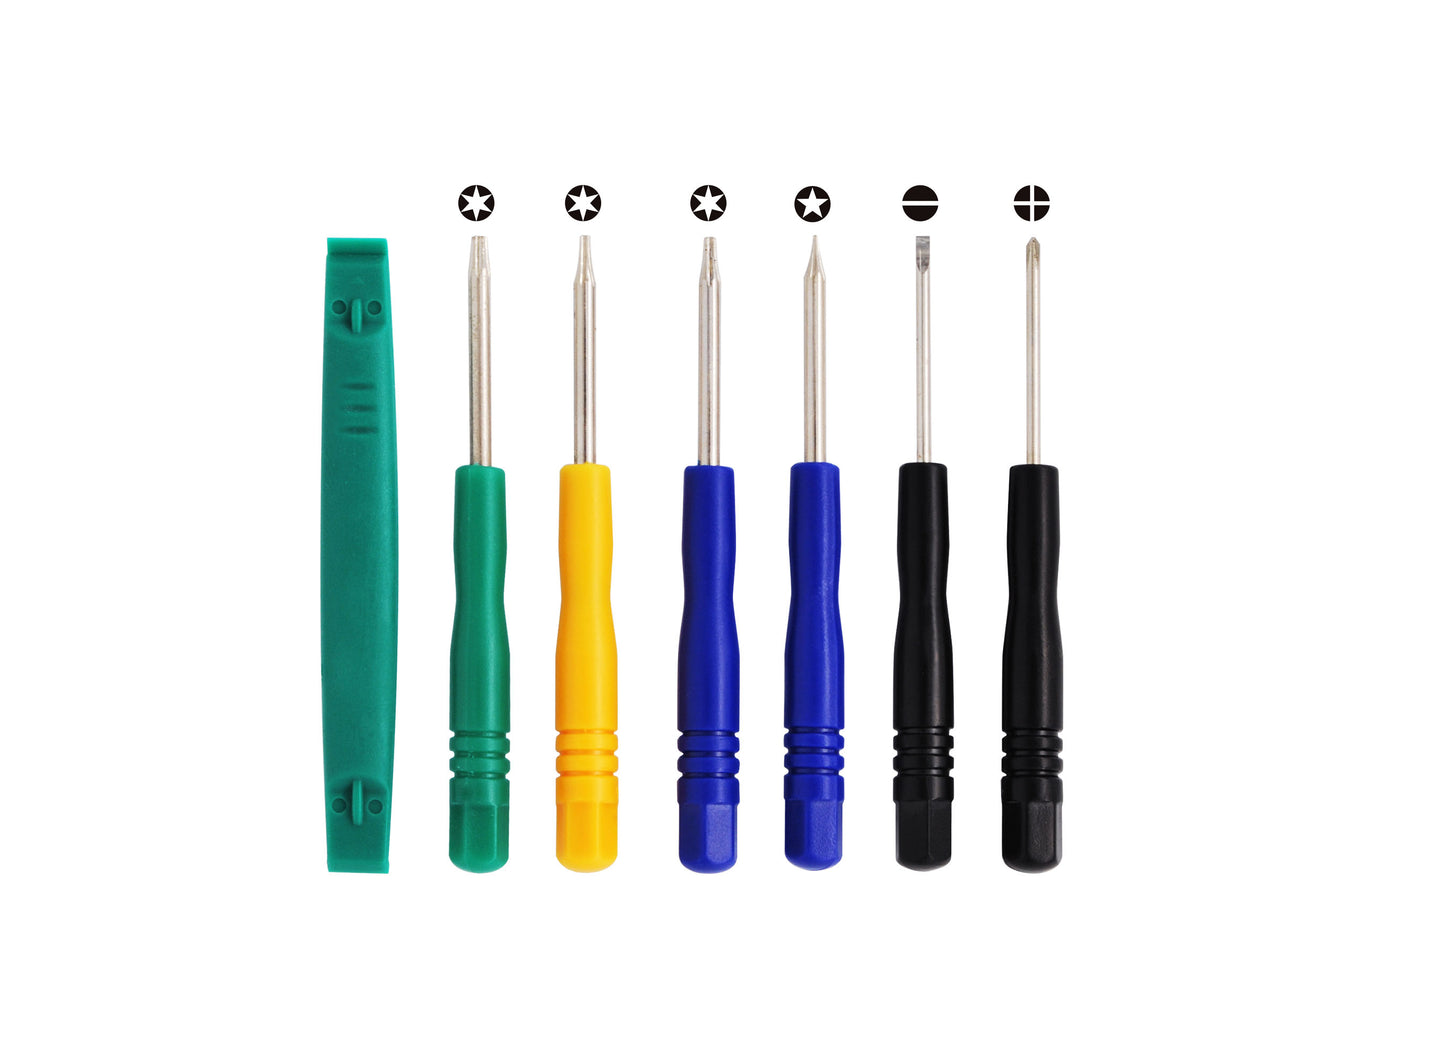 Set of 7 Tools (T8, T6, T5, T-, T+, Plastic & Pentalobe) for PDA, GPS, MP3, iPhone, iPod-SMAVtronics